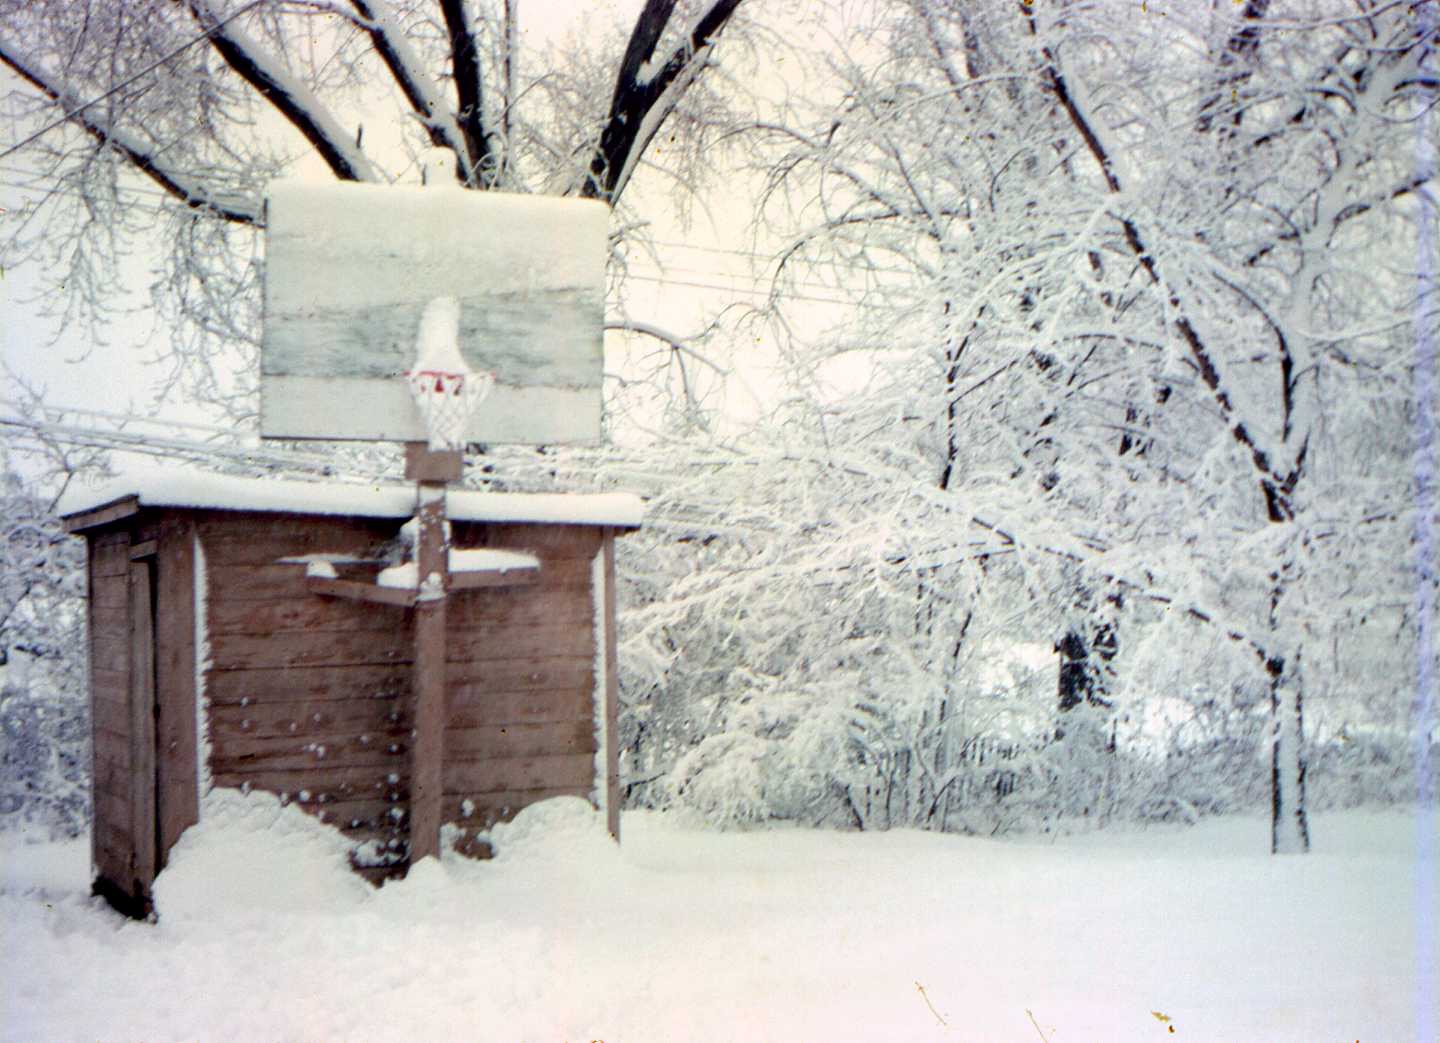 Elmquist shed, BB hoop, cottonwood trees in snow